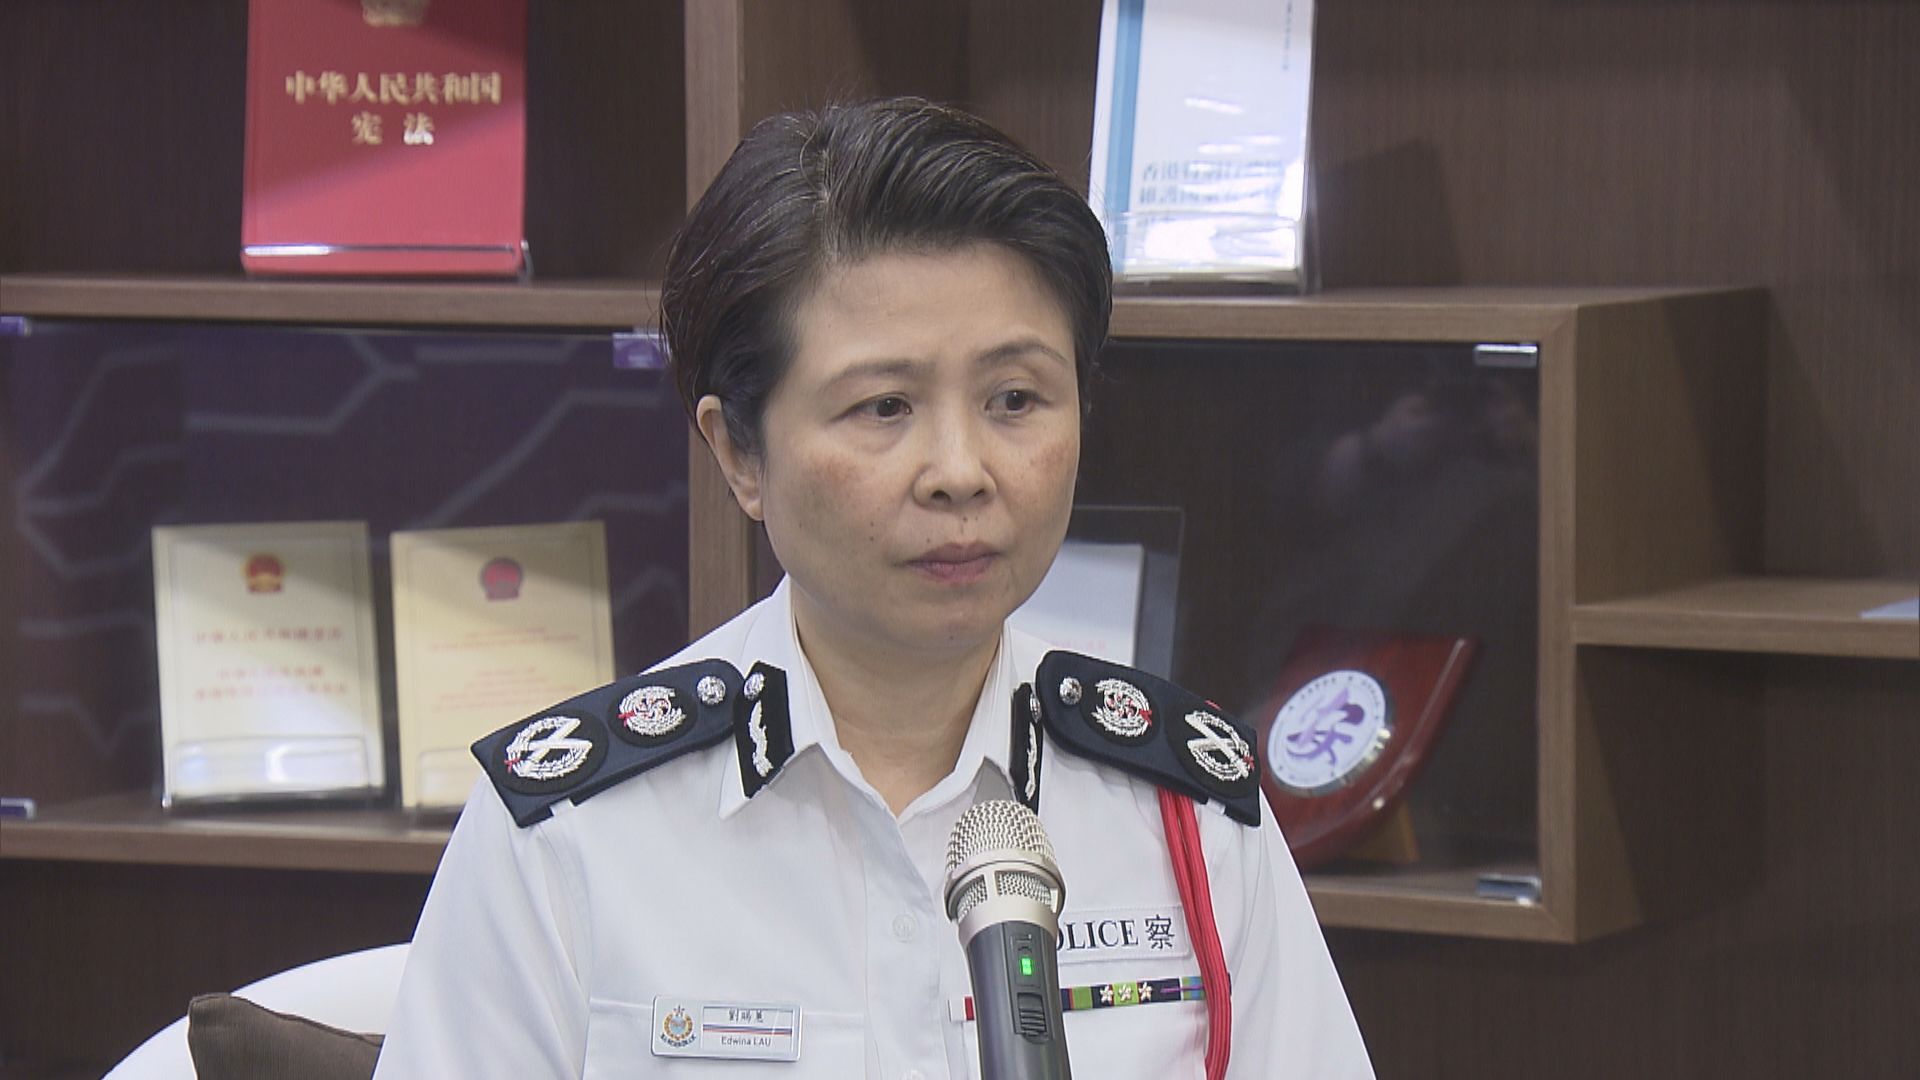 警務處副處長劉賜蕙周六退休　稱願意為國家安全再作貢獻